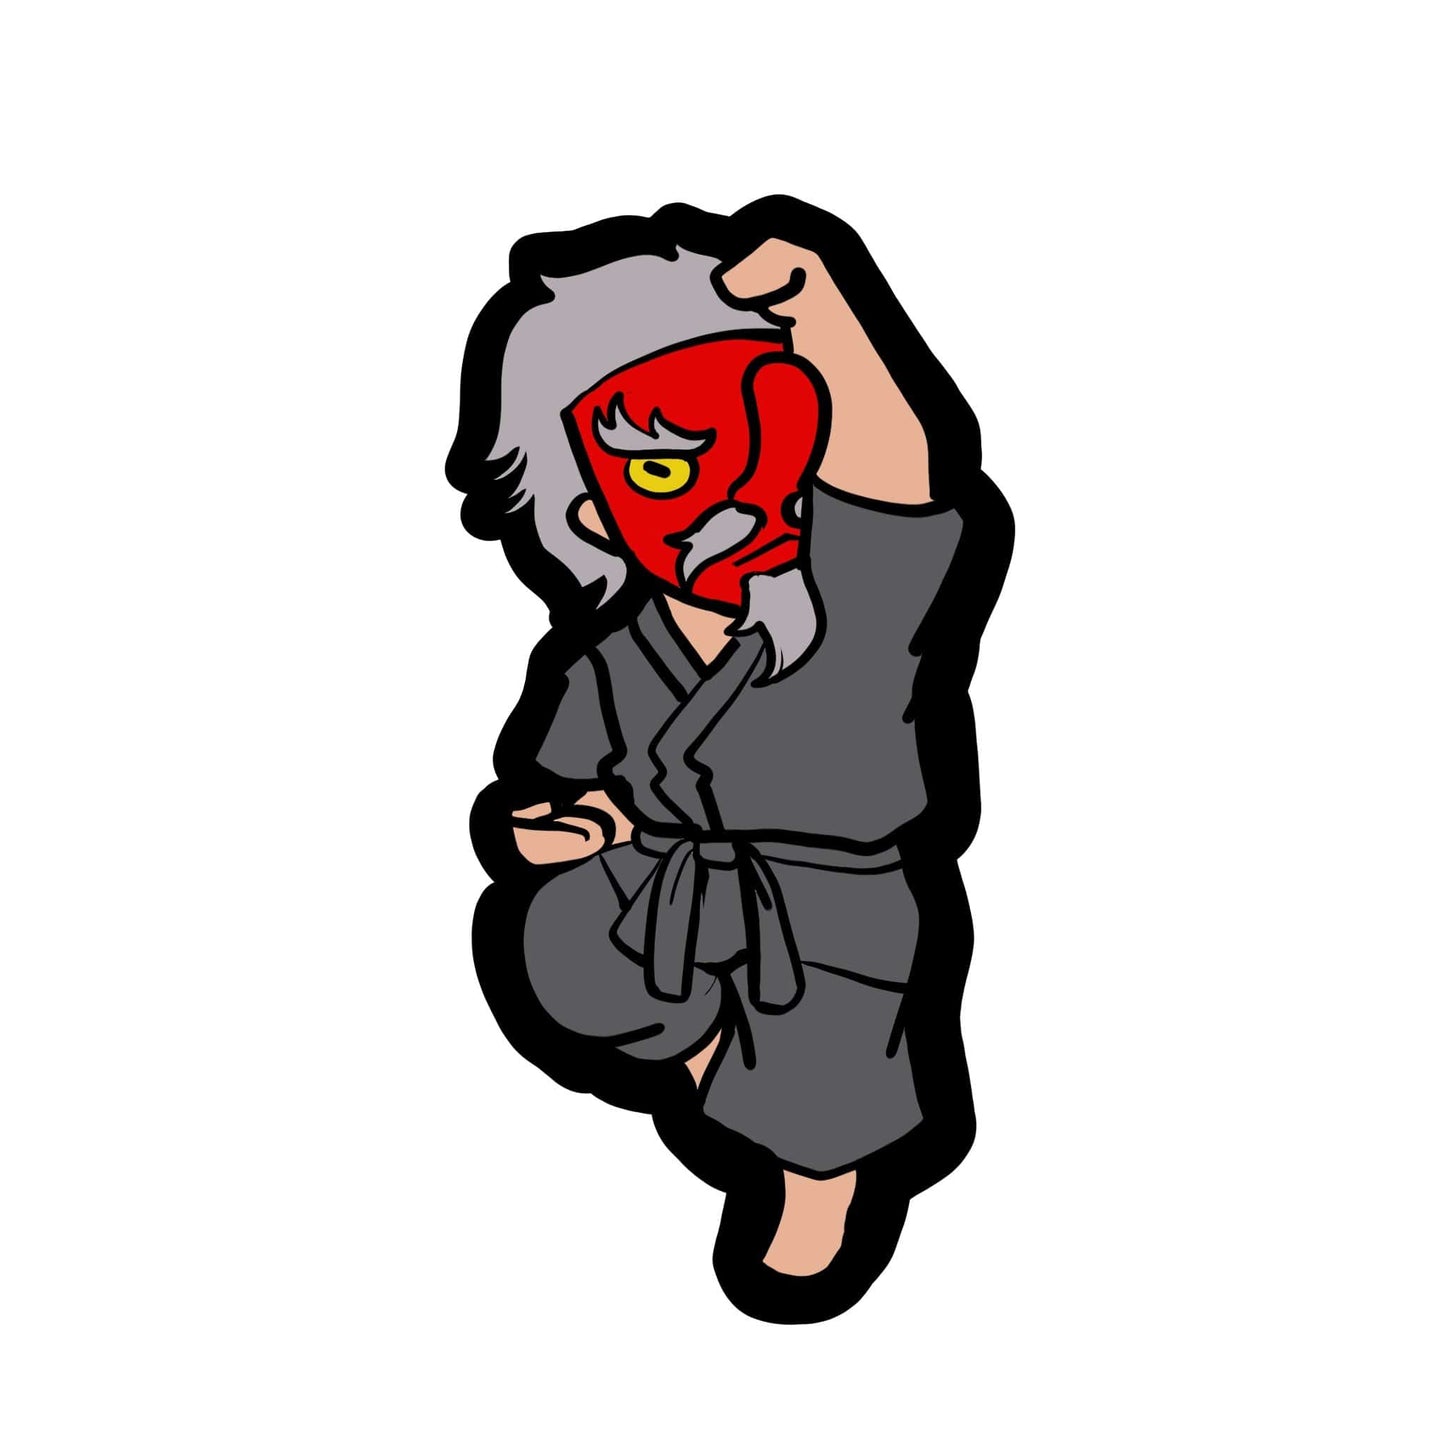 Mr. Karate XIII Keychain